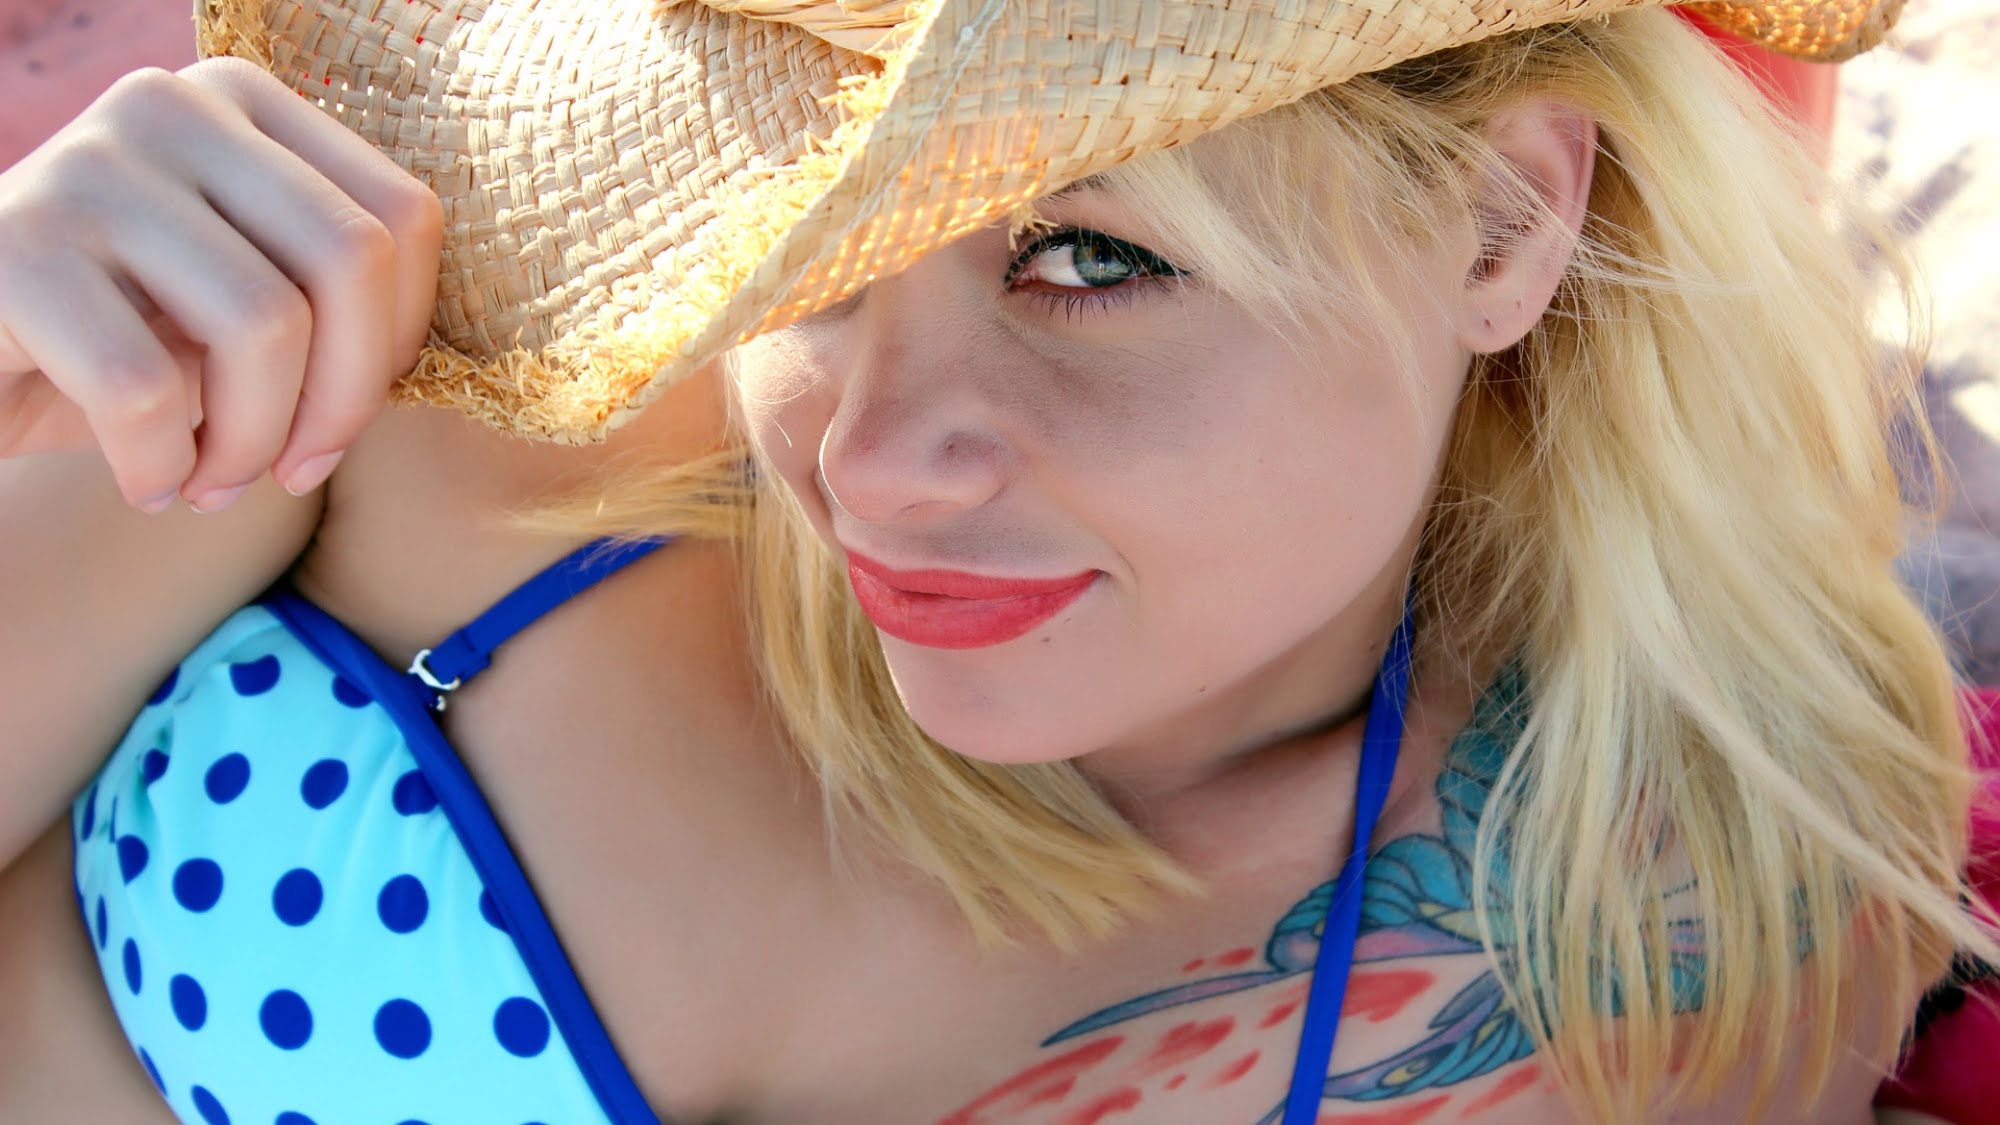 Woman sunbathing in blue swimming suit